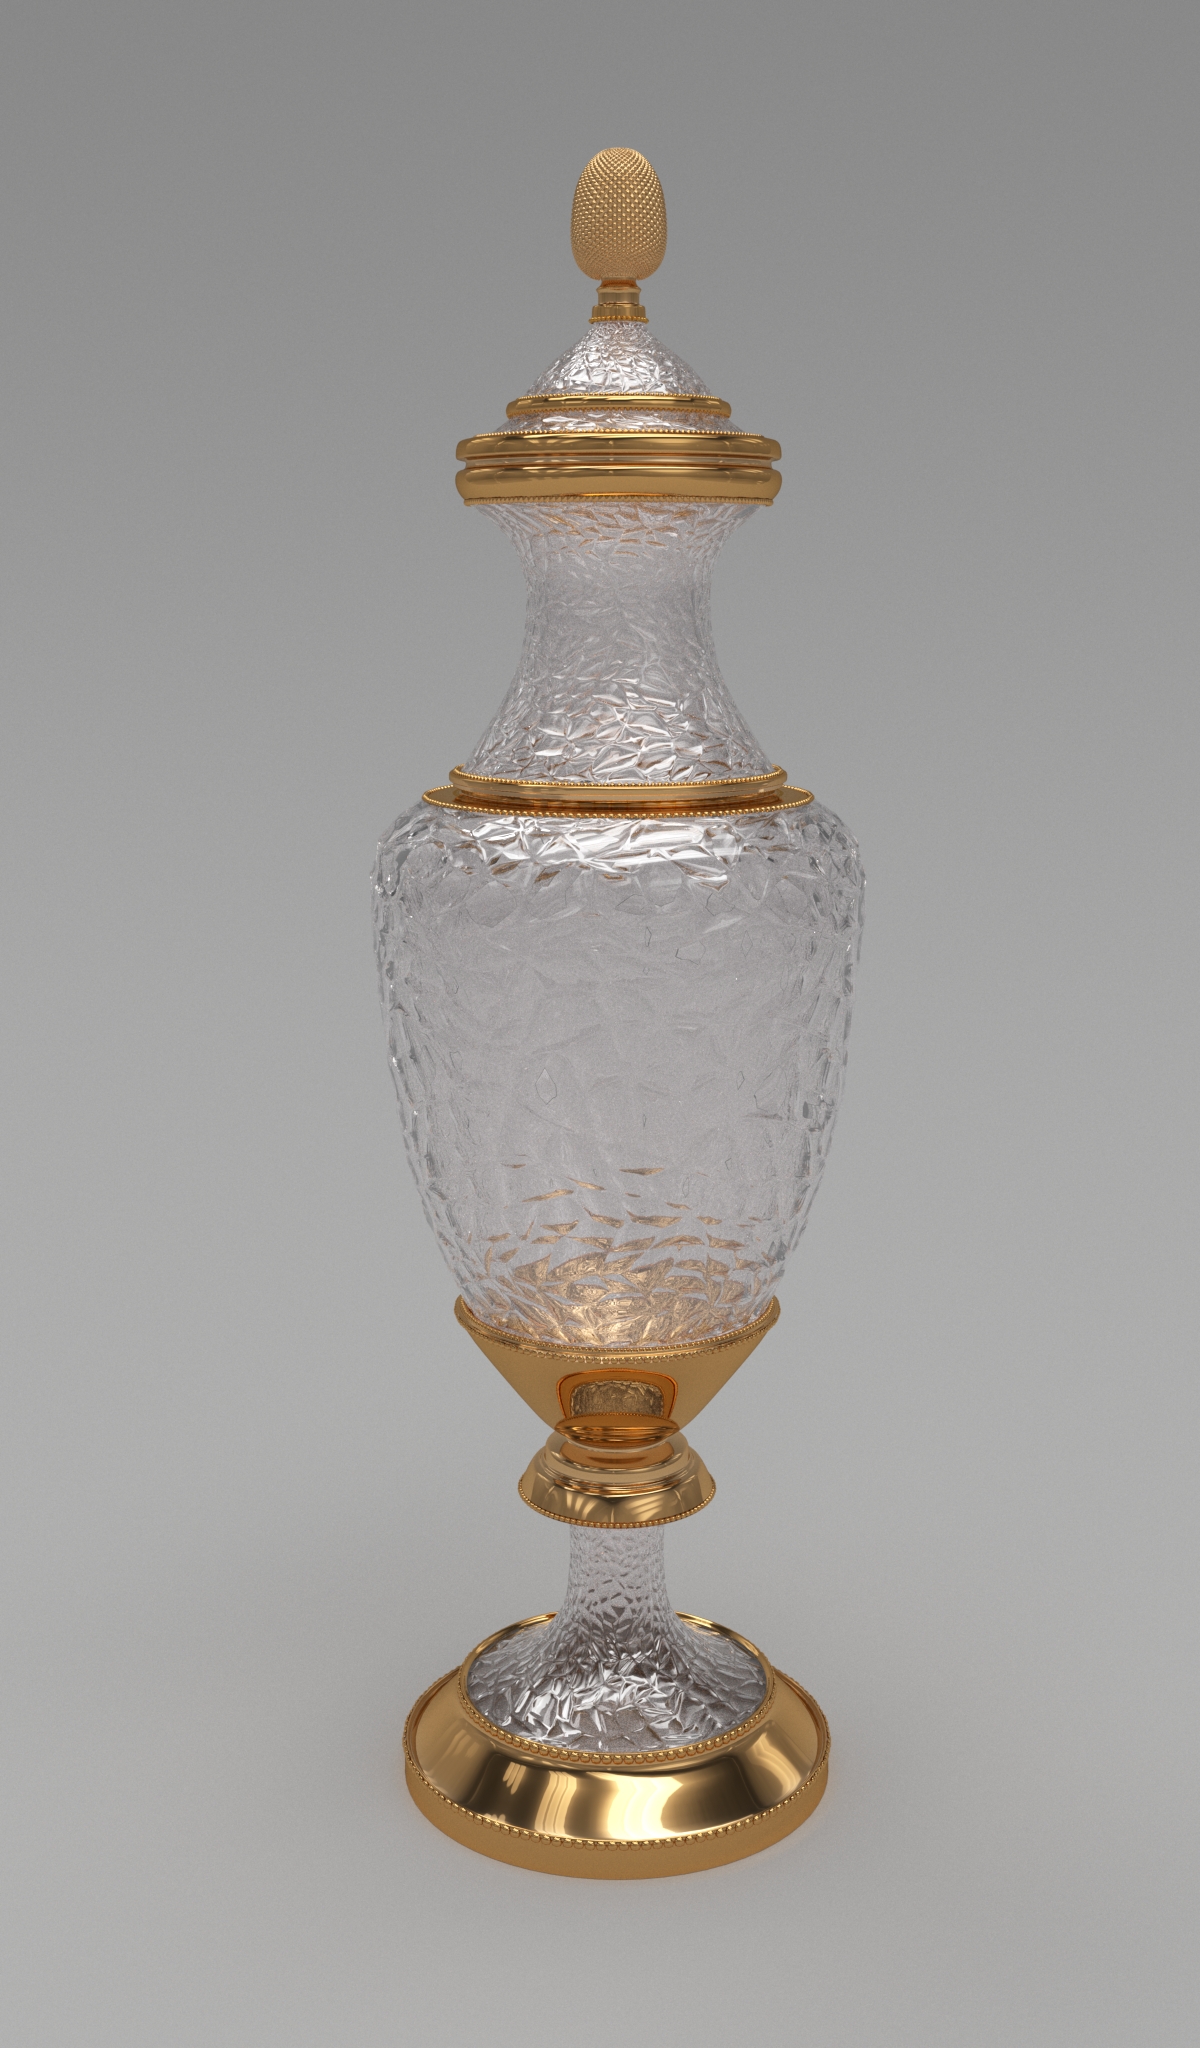 Vase in 3d max corona render image